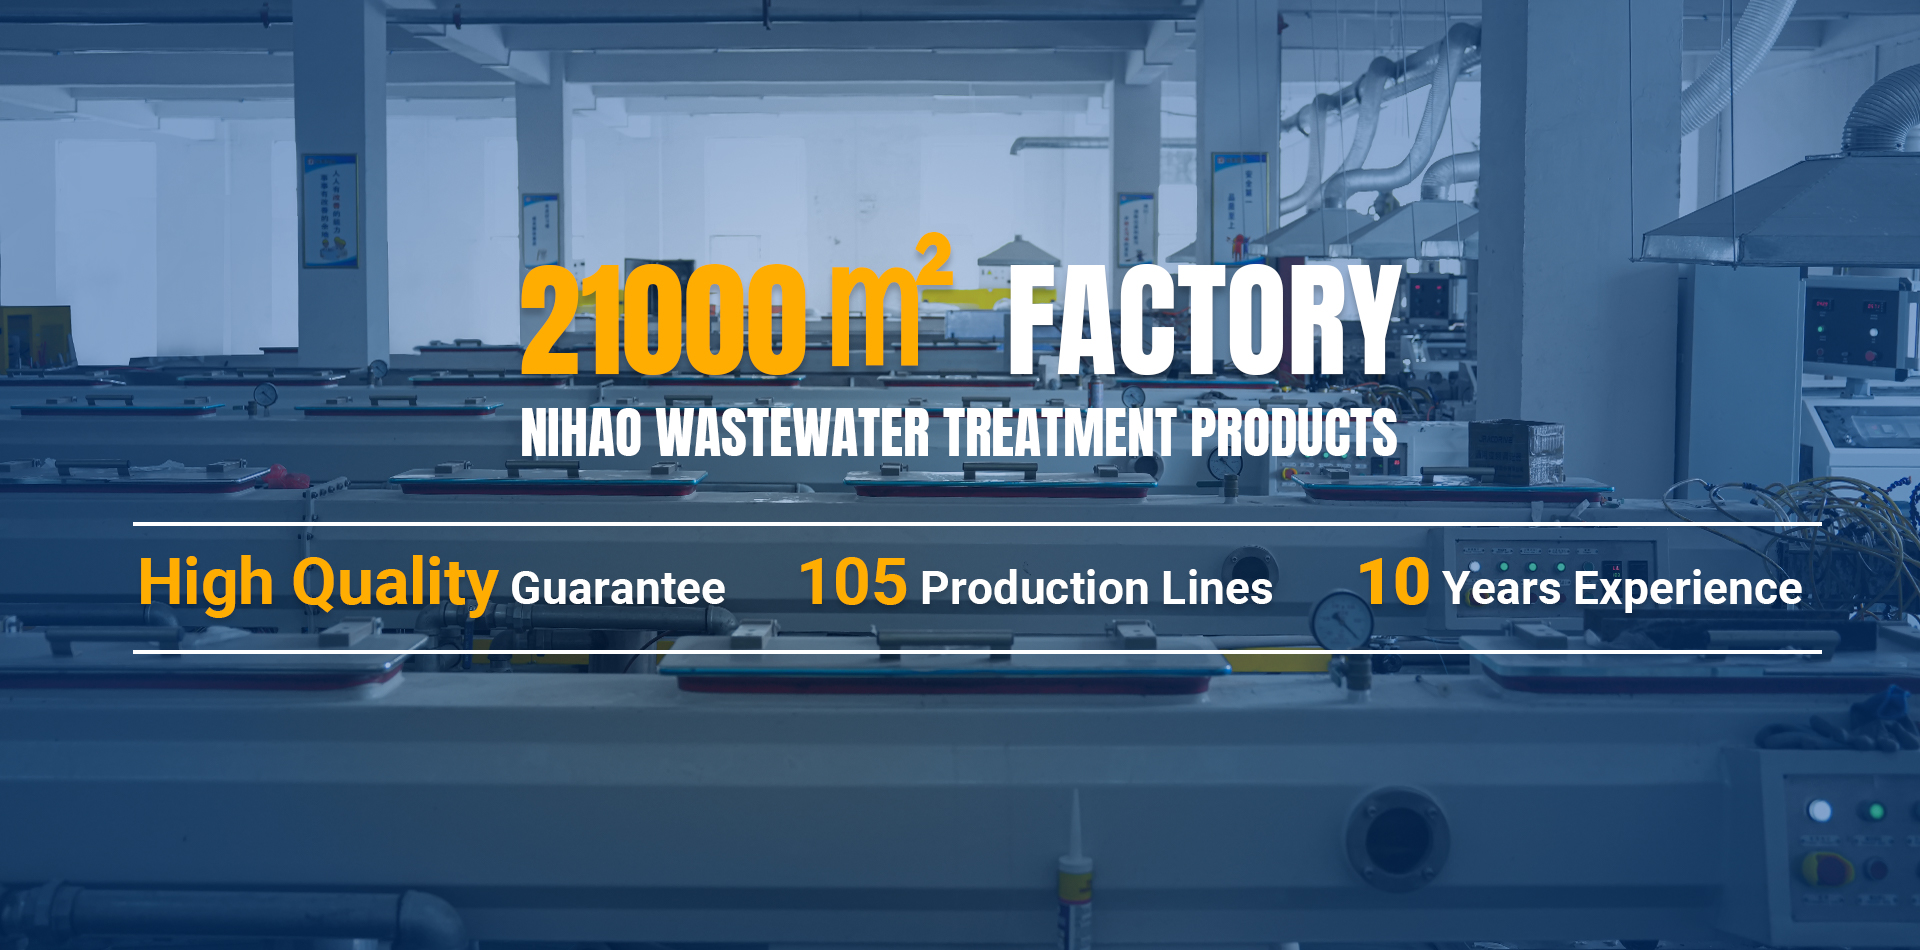 Produtos de tratamento de águas residuais Nihao